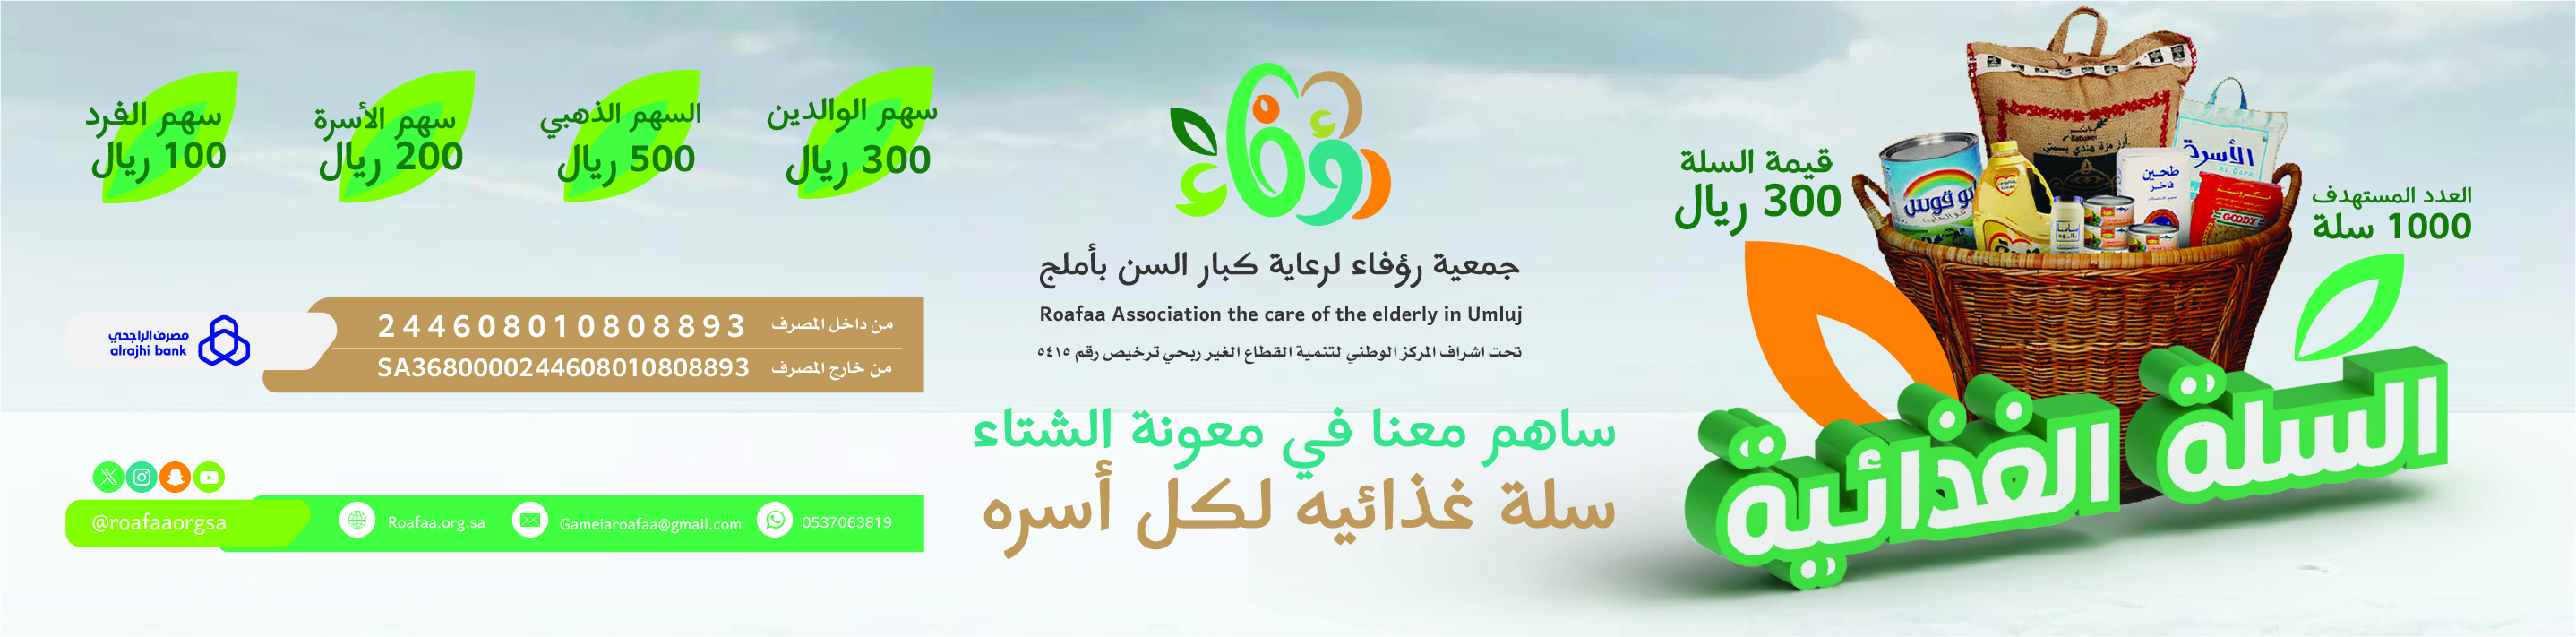 جمعية رؤفاء لرعاية كبار السن بأملج